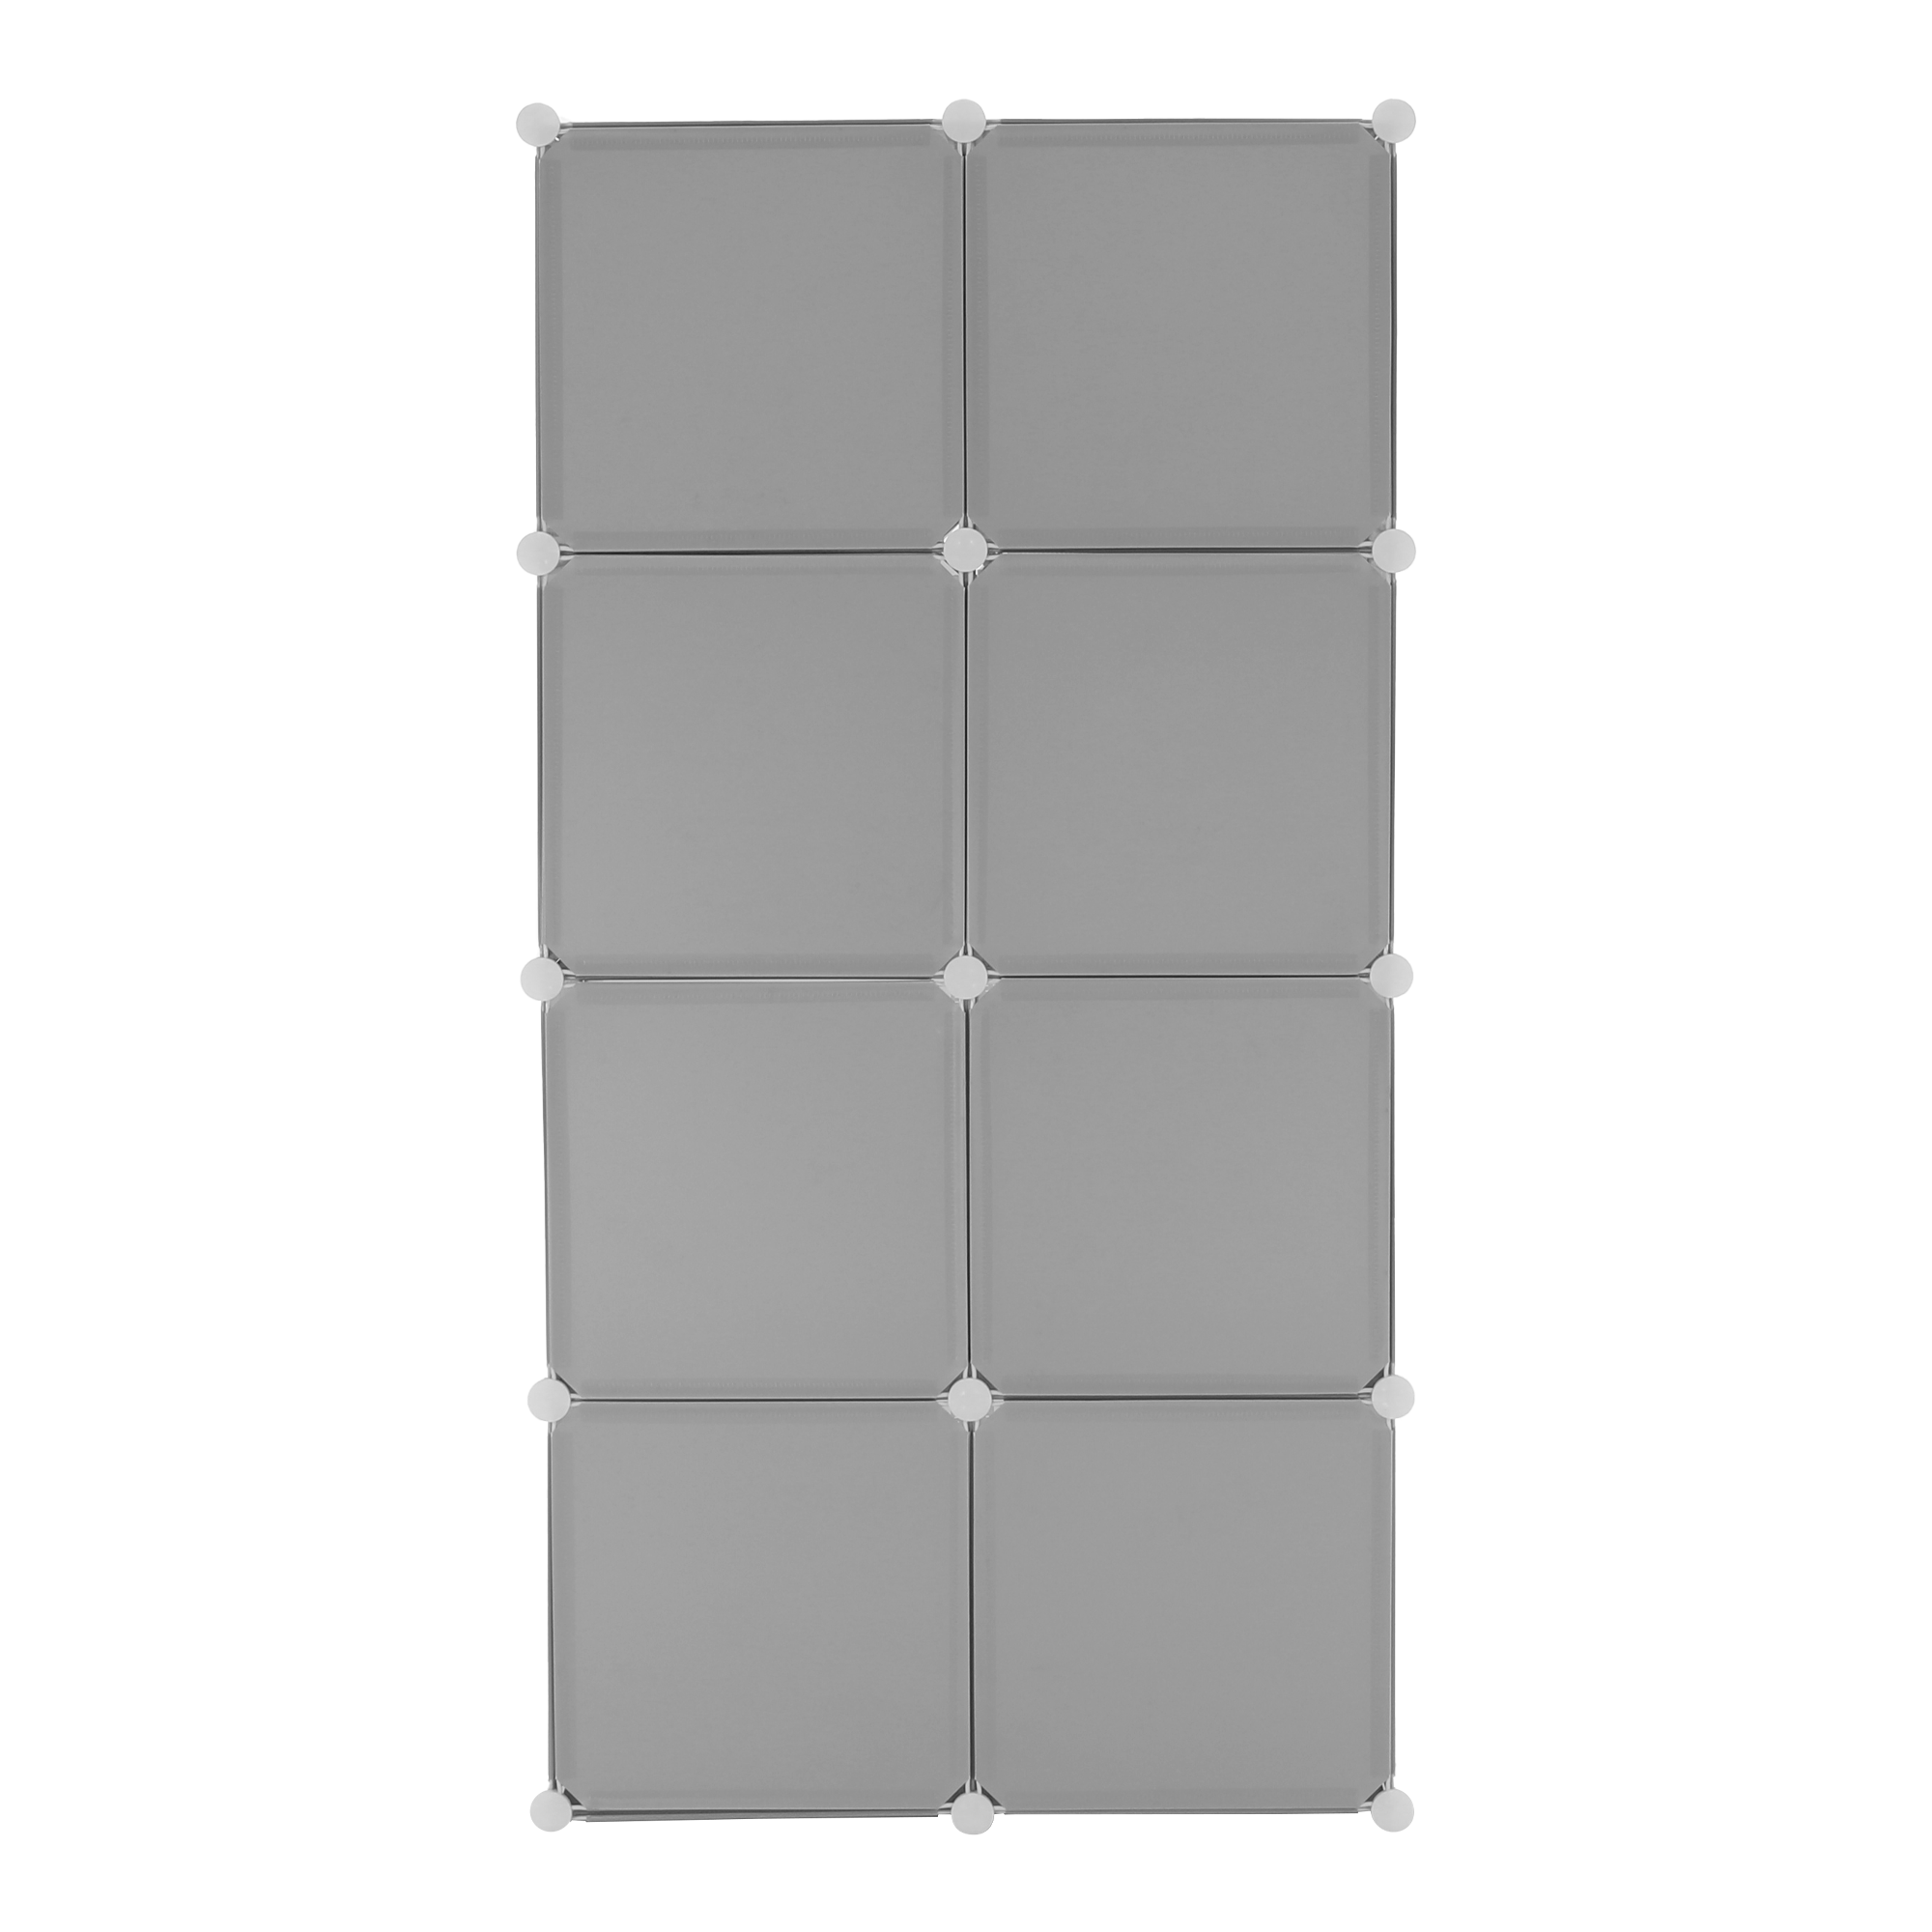 Dětská modulární skříň, šedý / dětský vzor, ATREY